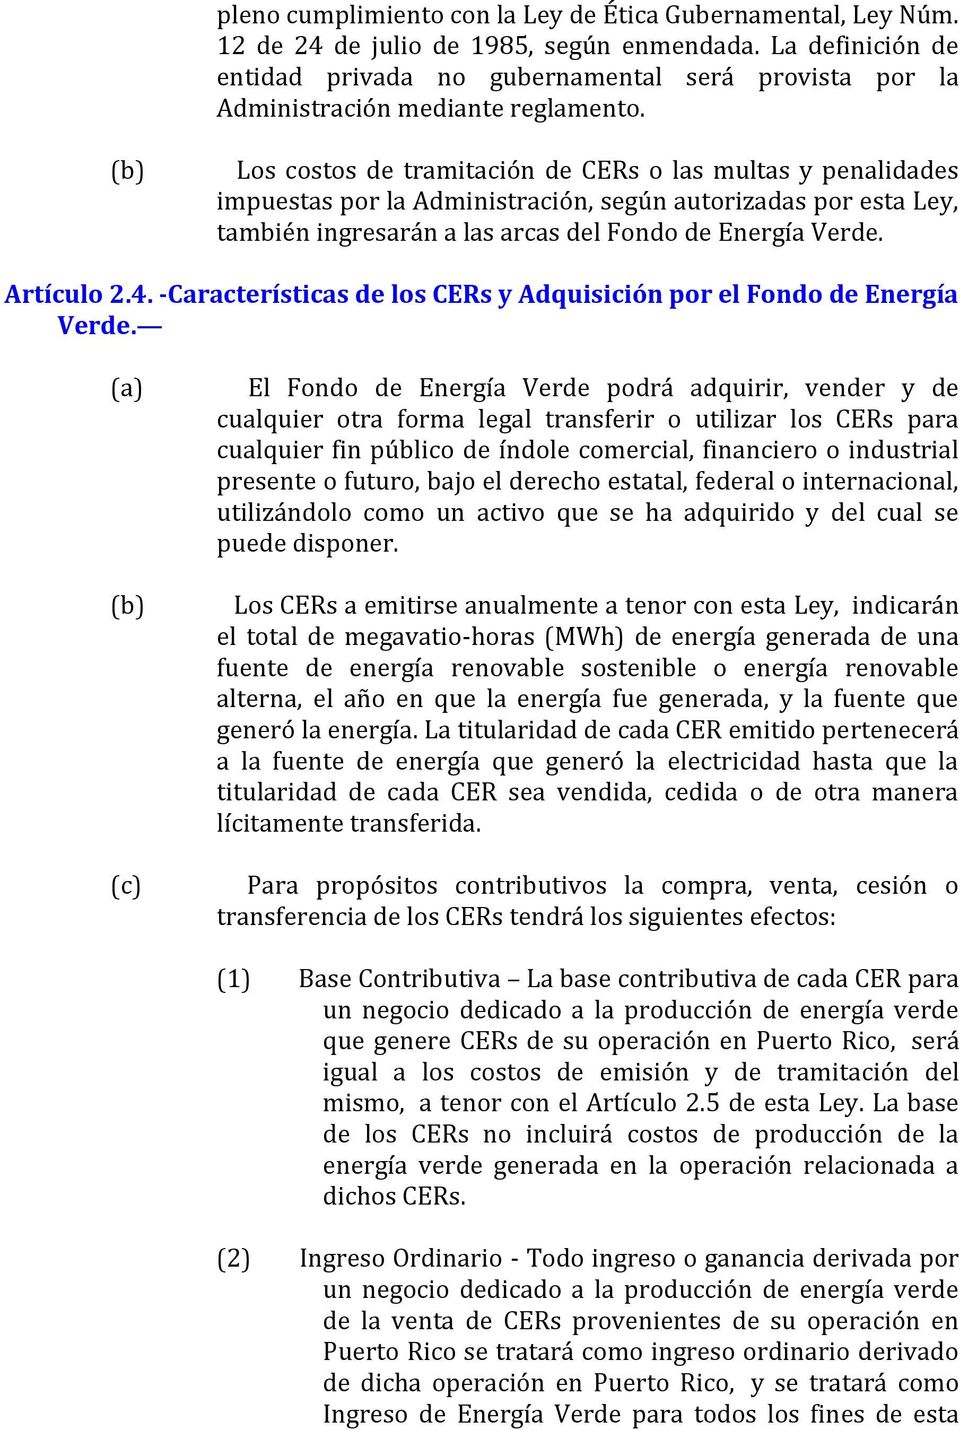 (b) Los costos de tramitación de CERs o las multas y penalidades impuestas por la Administración, según autorizadas por esta Ley, también ingresarán a las arcas del Fondo de Energía Verde. Artículo 2.